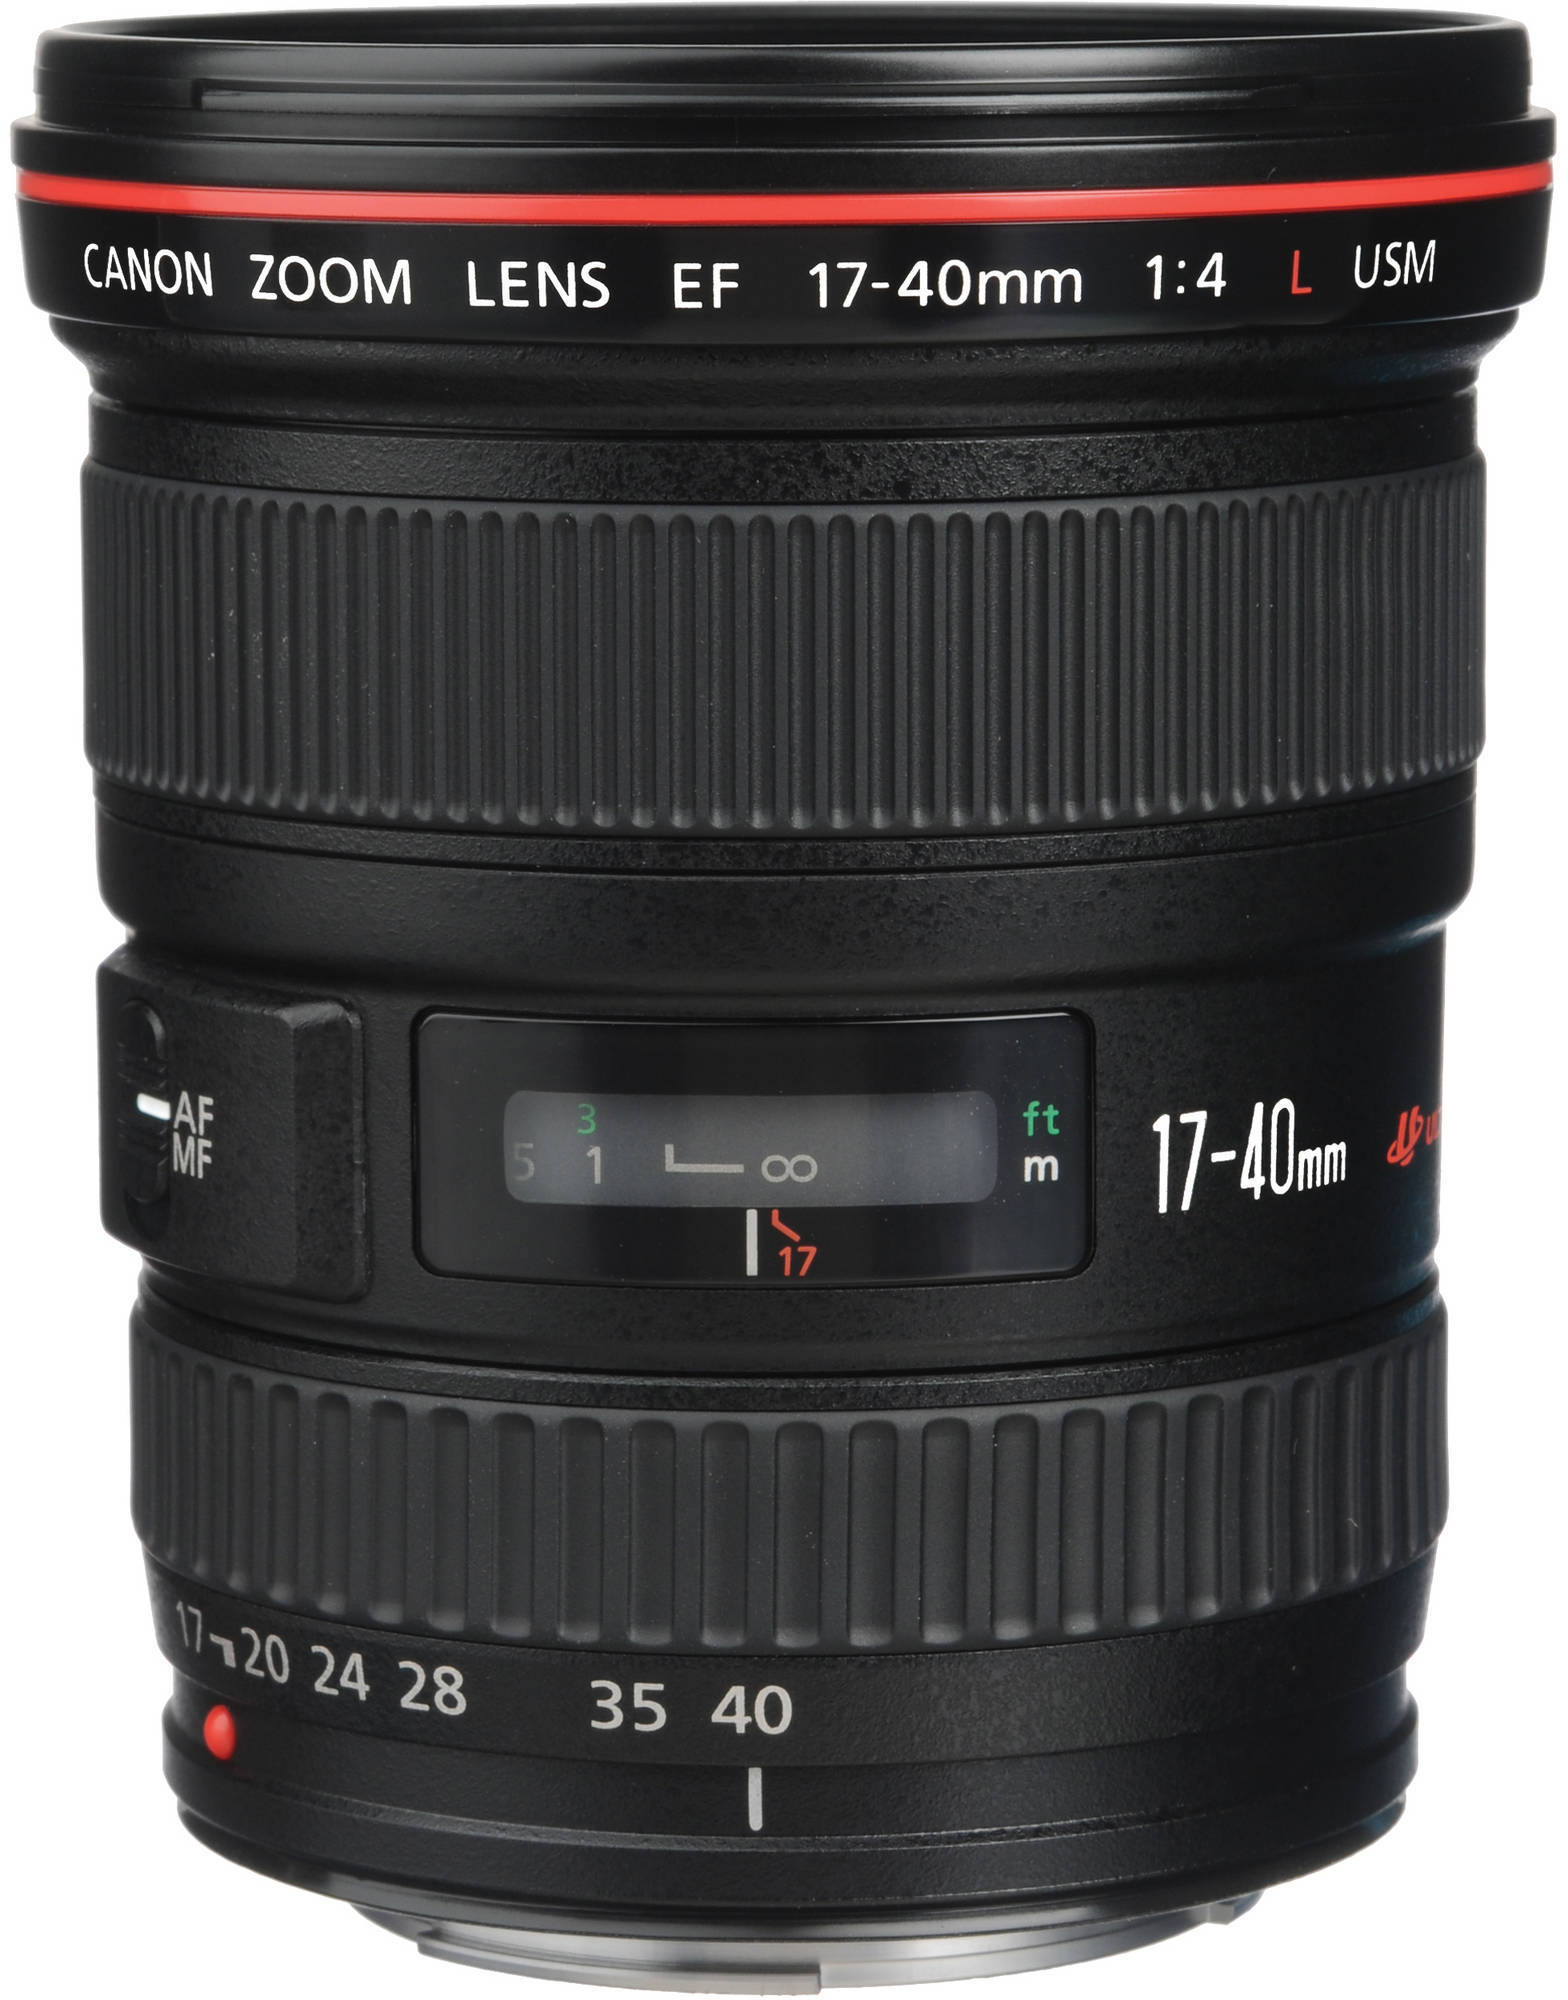 Canon EF 17-40mm f/4L USM laajakulmazoom-objektiivi – Erittäin